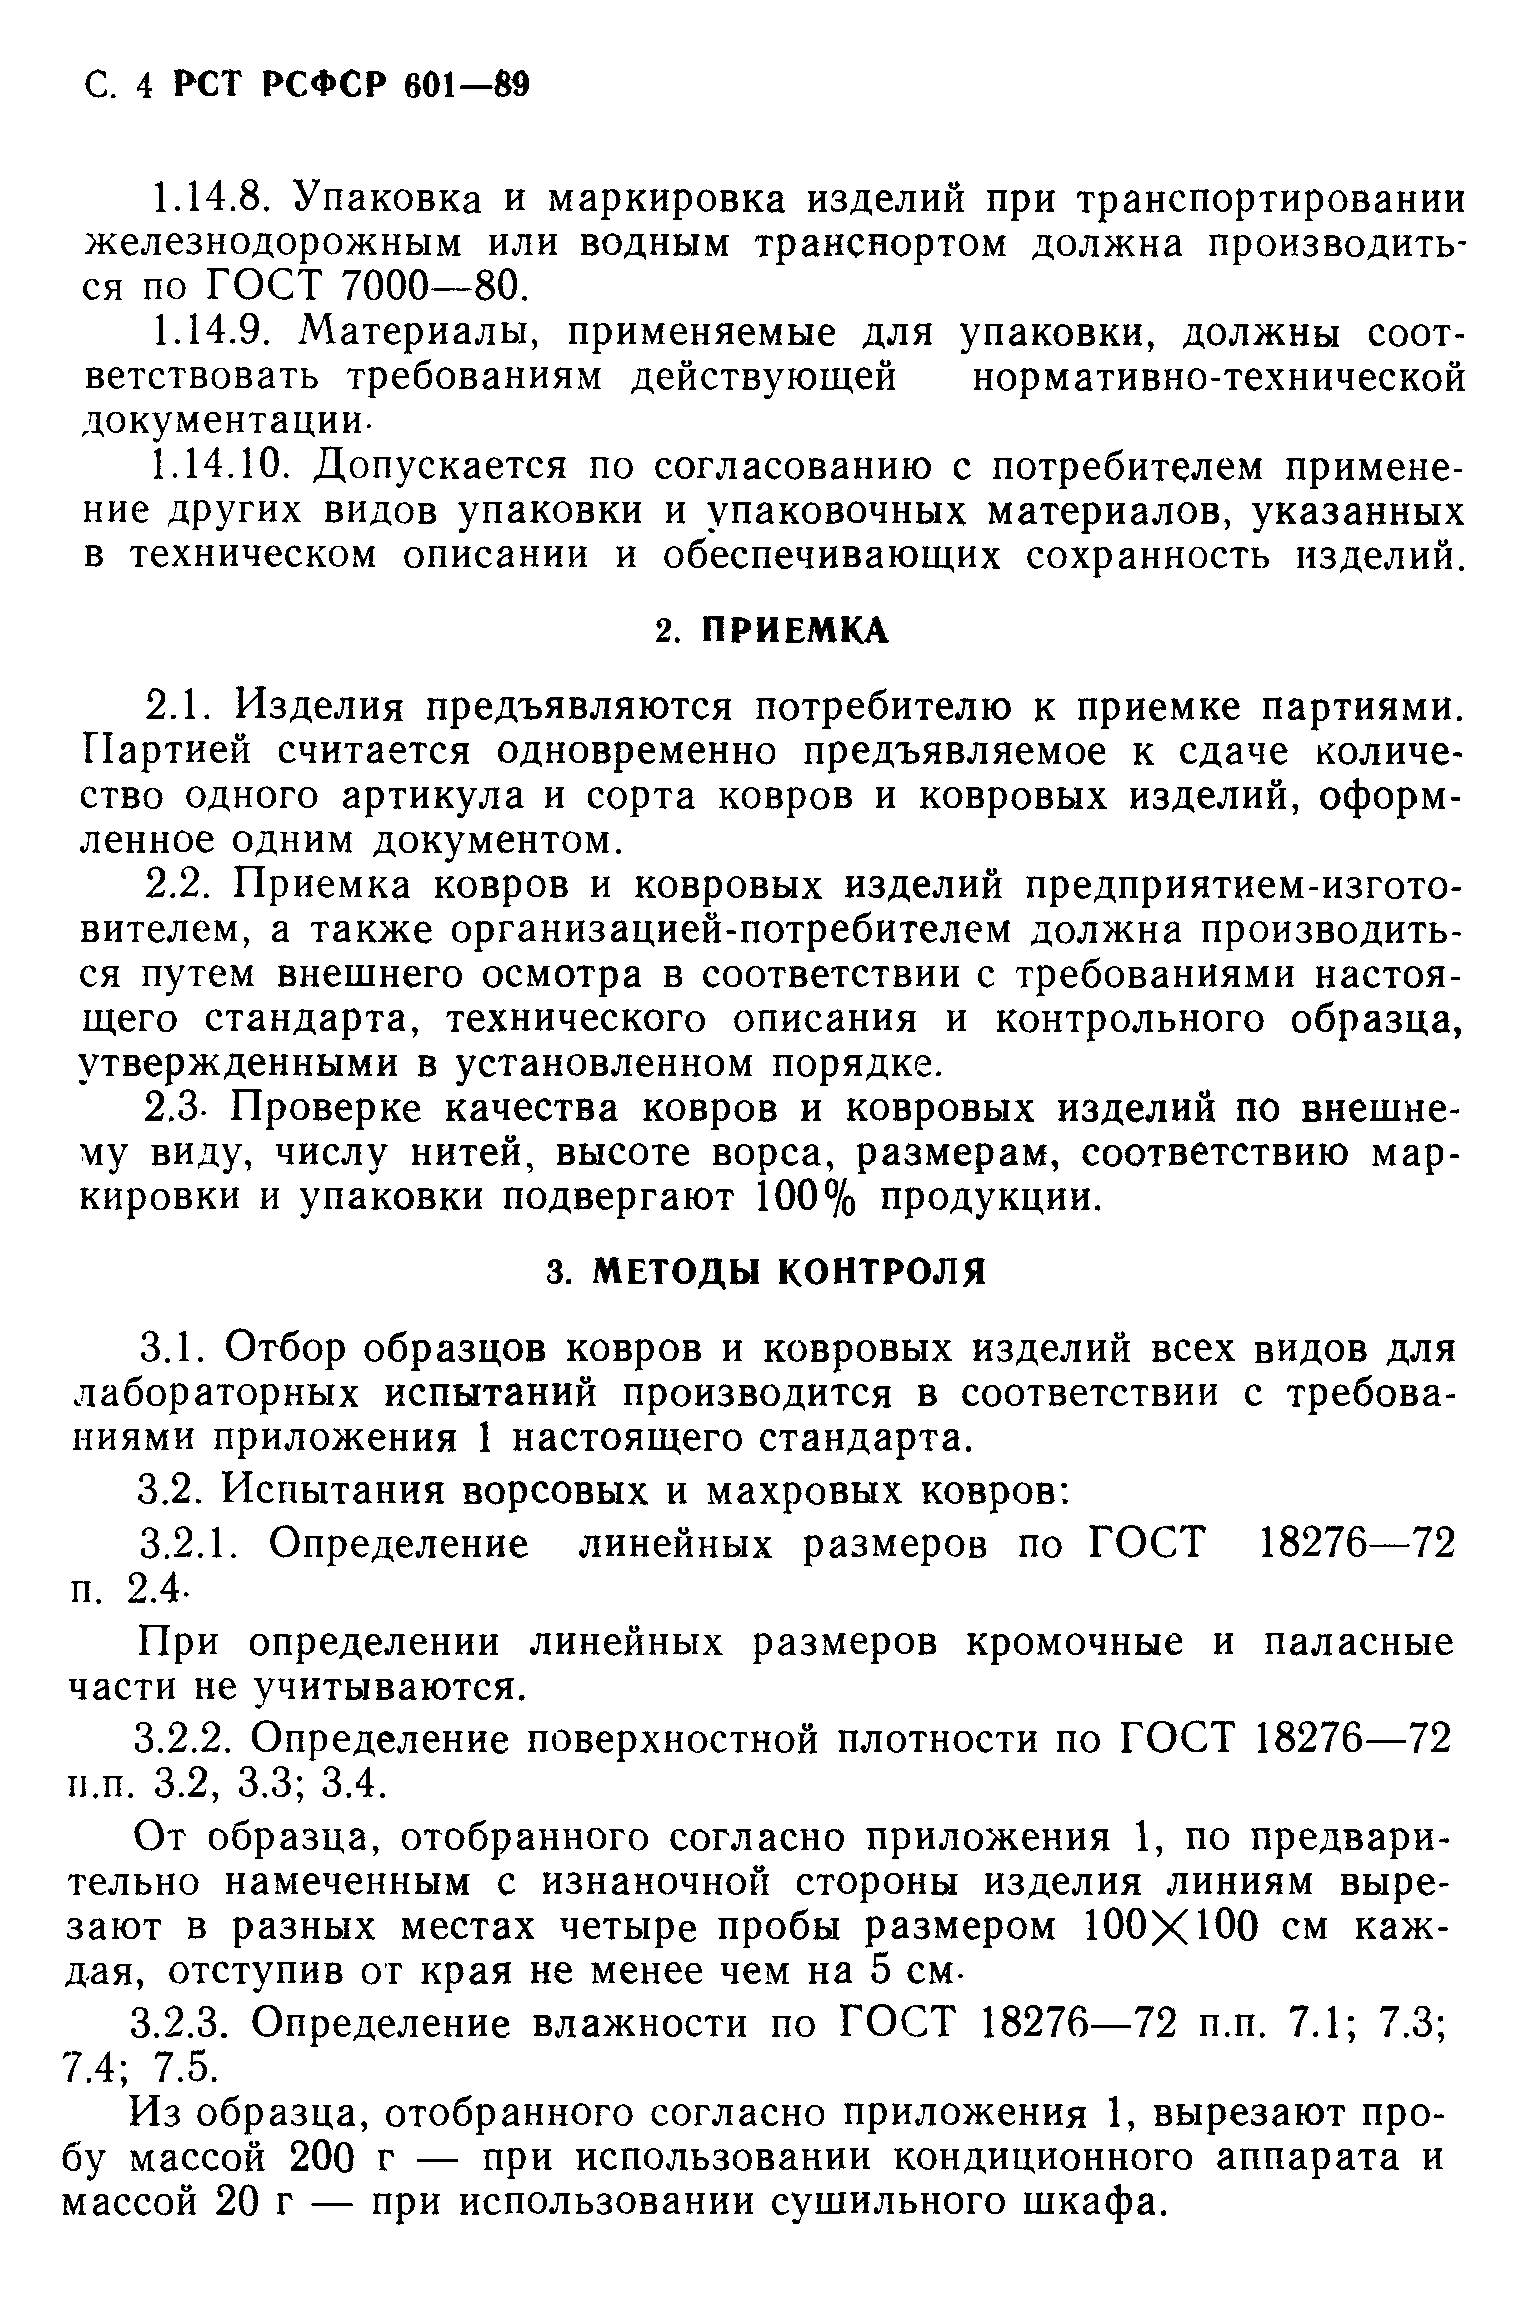 РСТ РСФСР 601-89